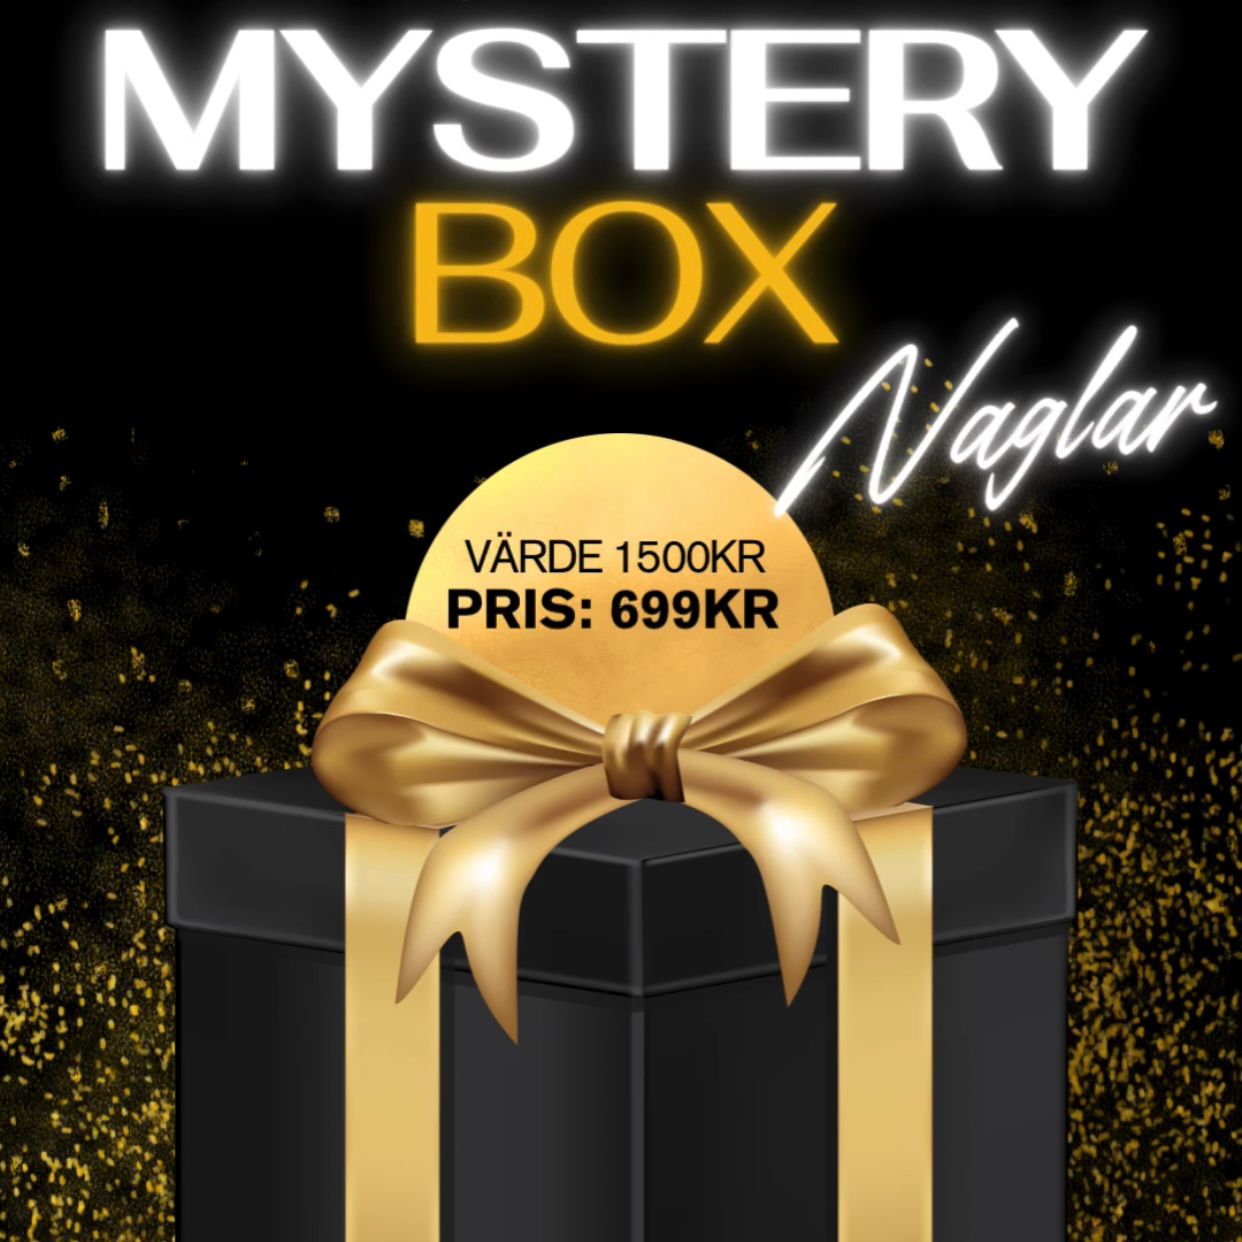 Mystery Box Naglar - VÄRDE 1500kr